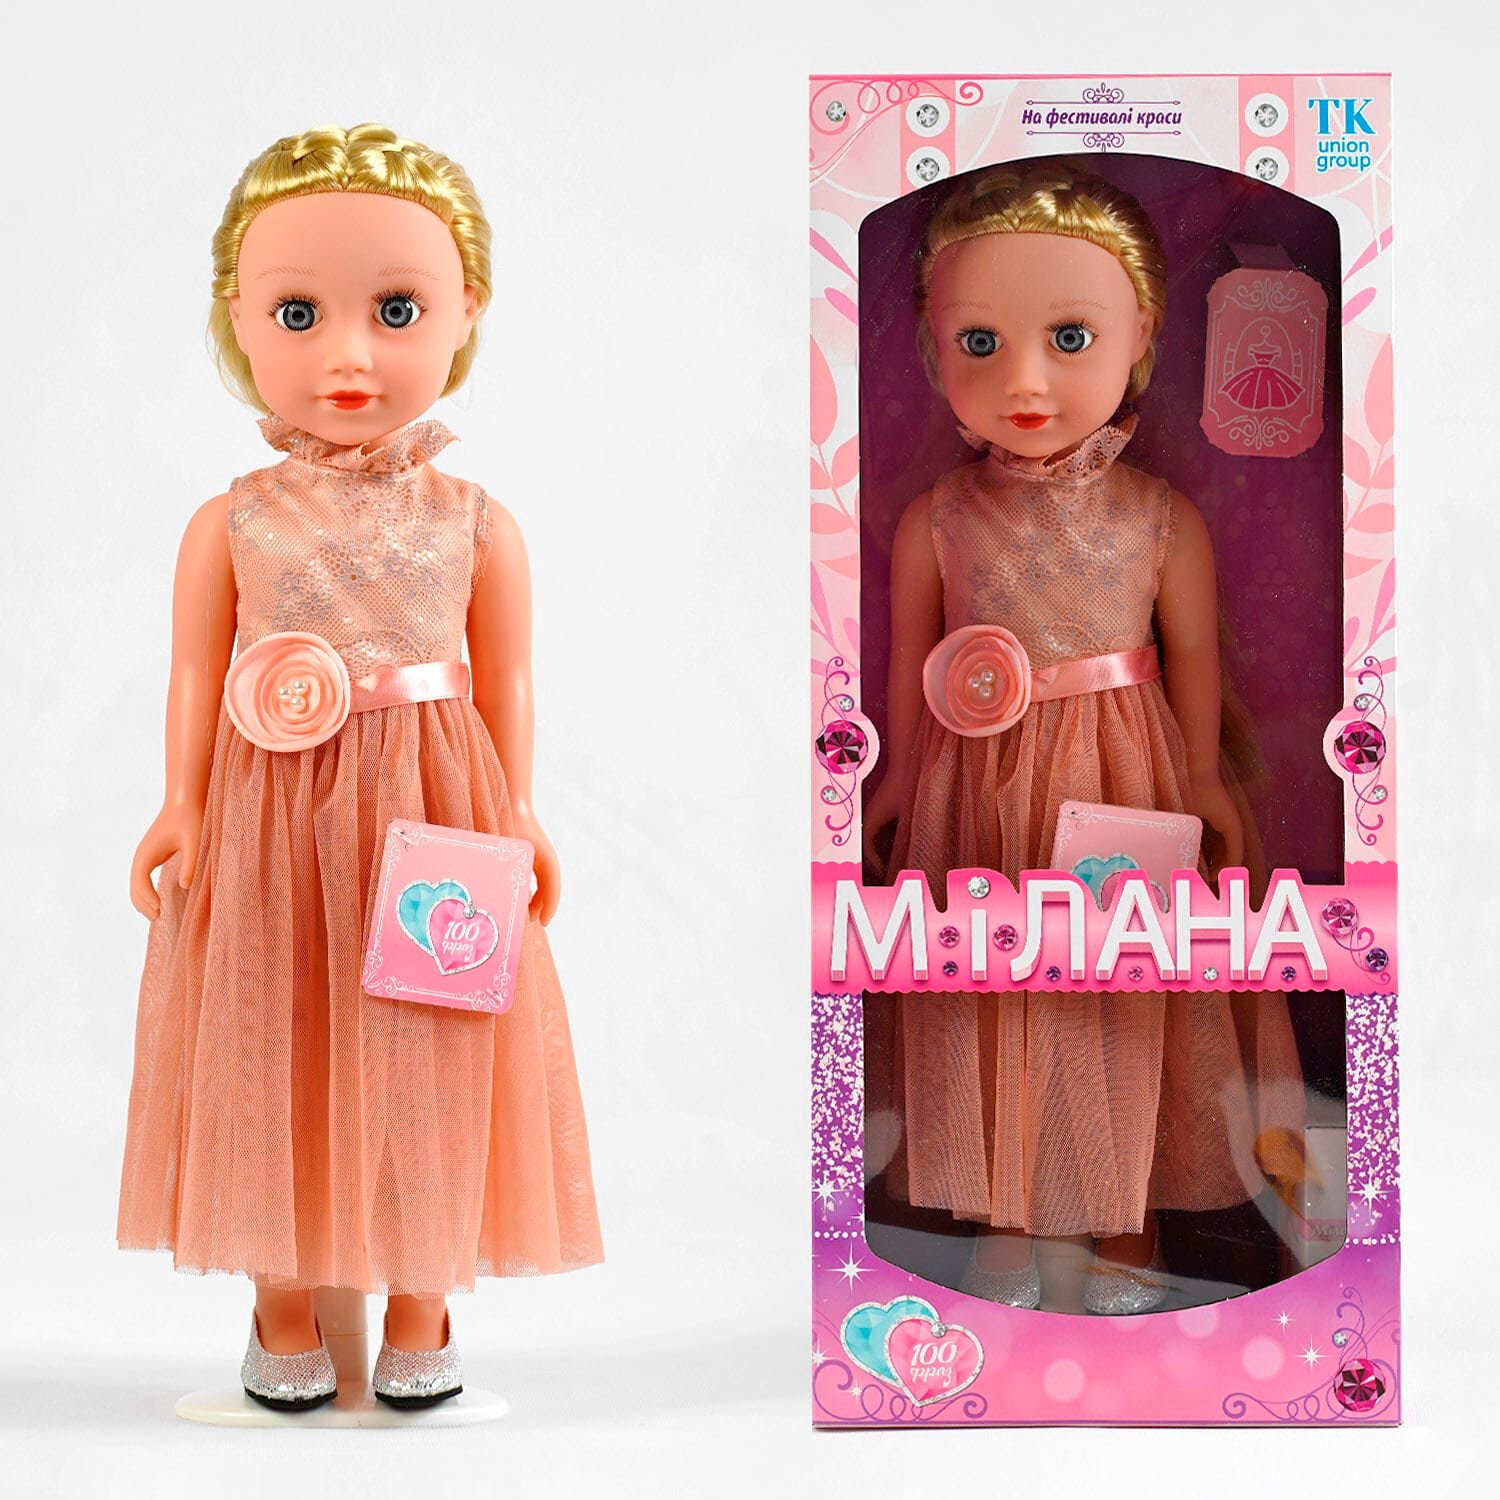 Кукла говорит 100 фраз на украинском языке (ML - 20140) высота 44 см, в коробке